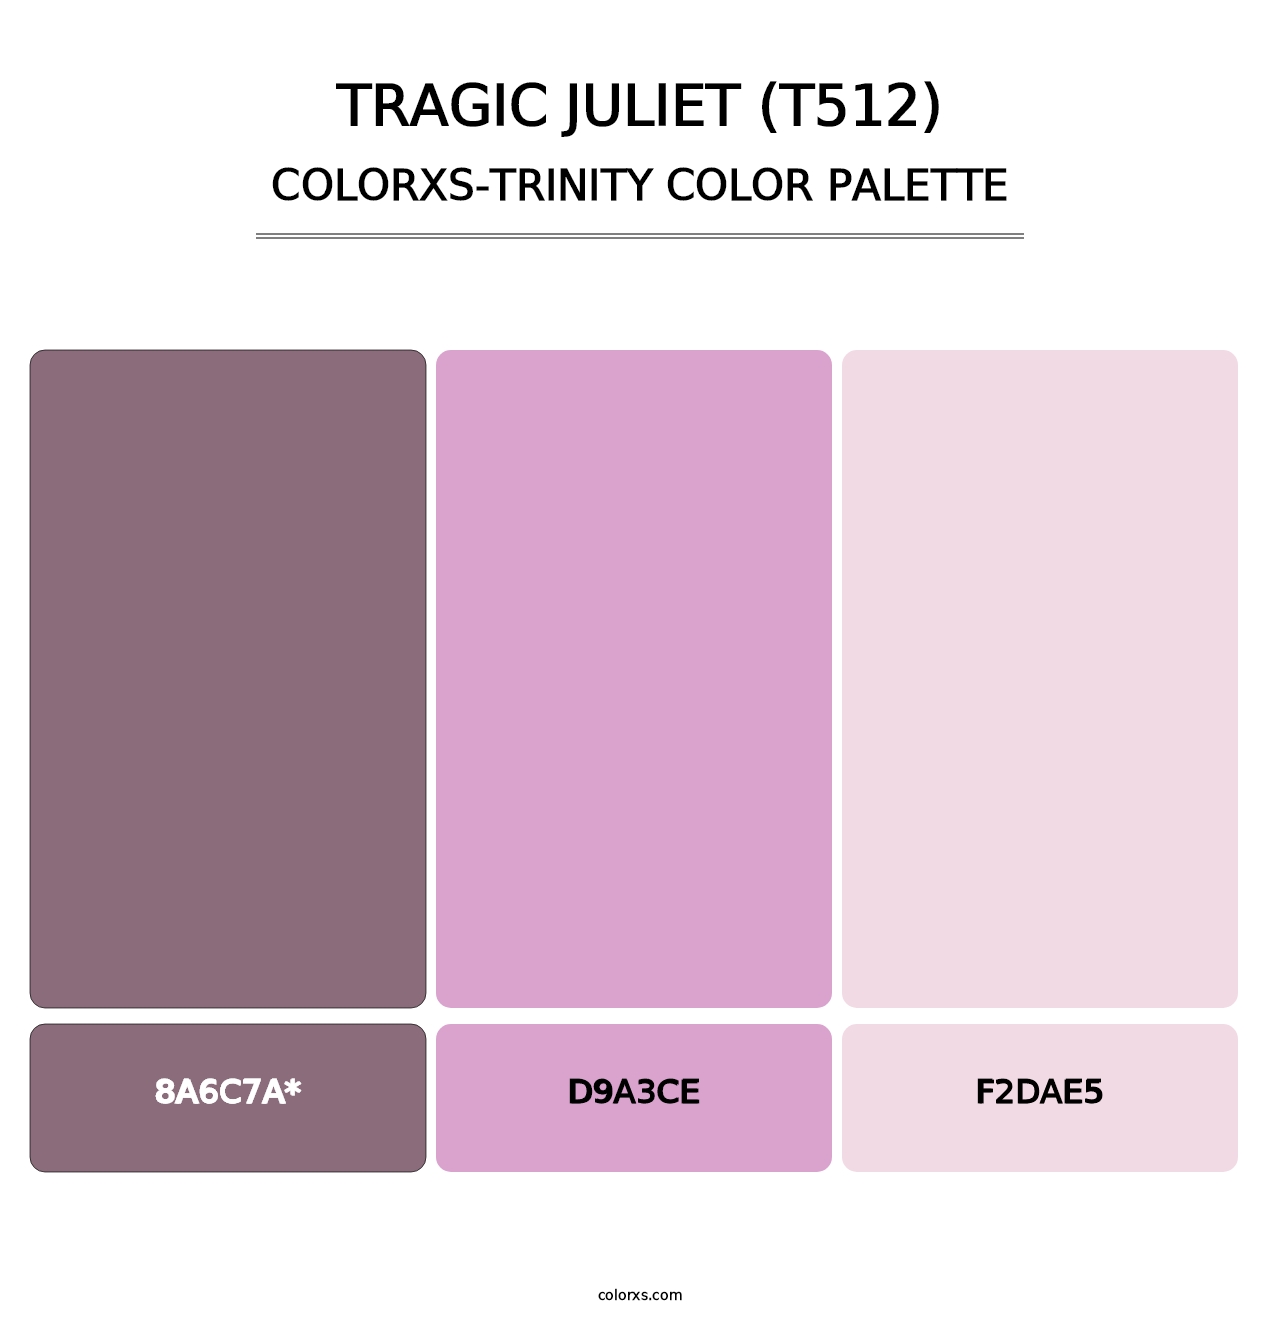 Tragic Juliet (T512) - Colorxs Trinity Palette